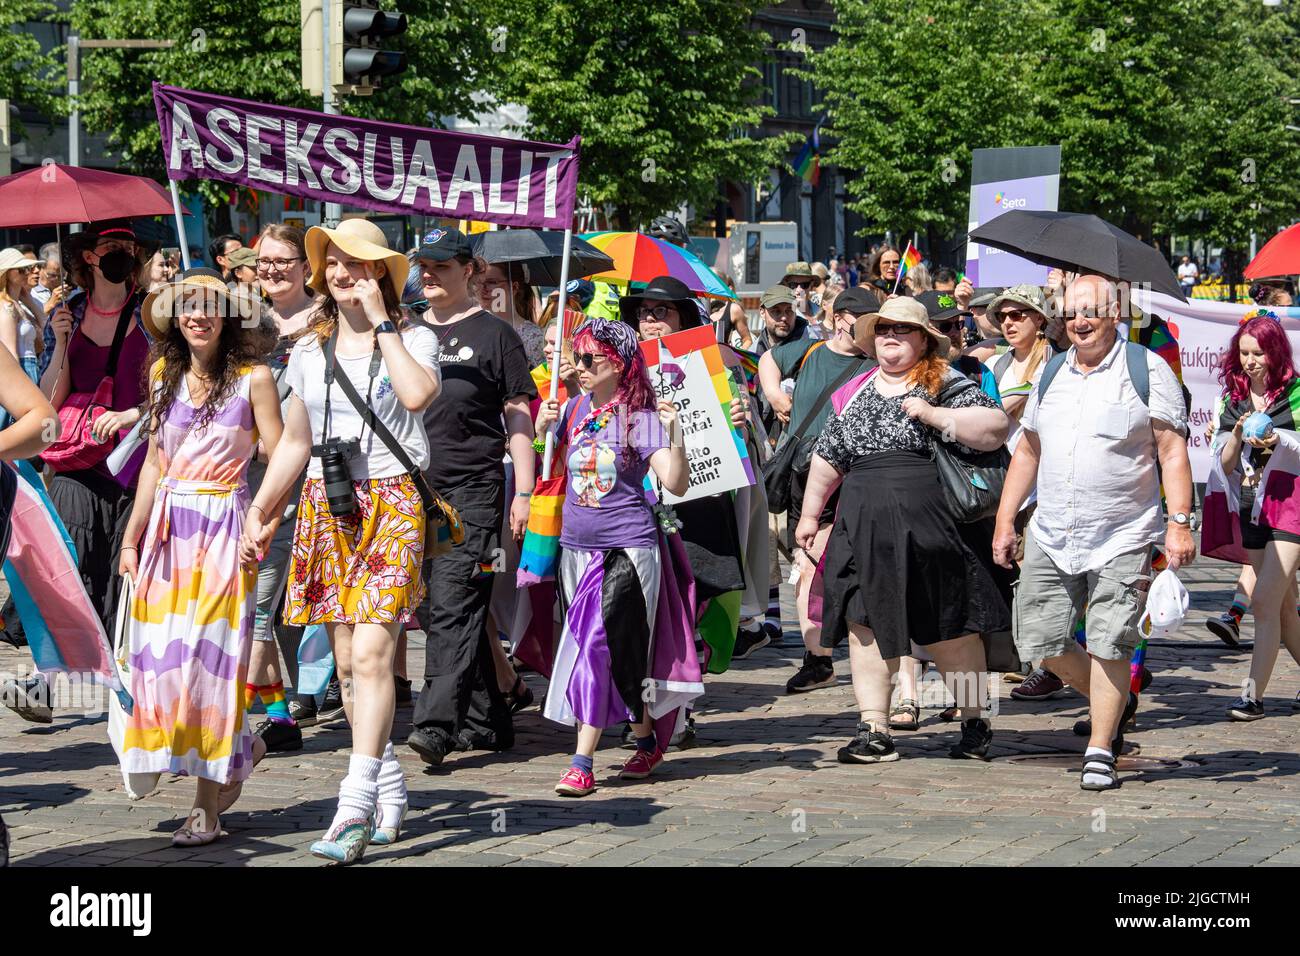 Aseksuaalit Banner bei der Helsinki Pride 2022 Parade in Helsinki, Finnland Stockfoto